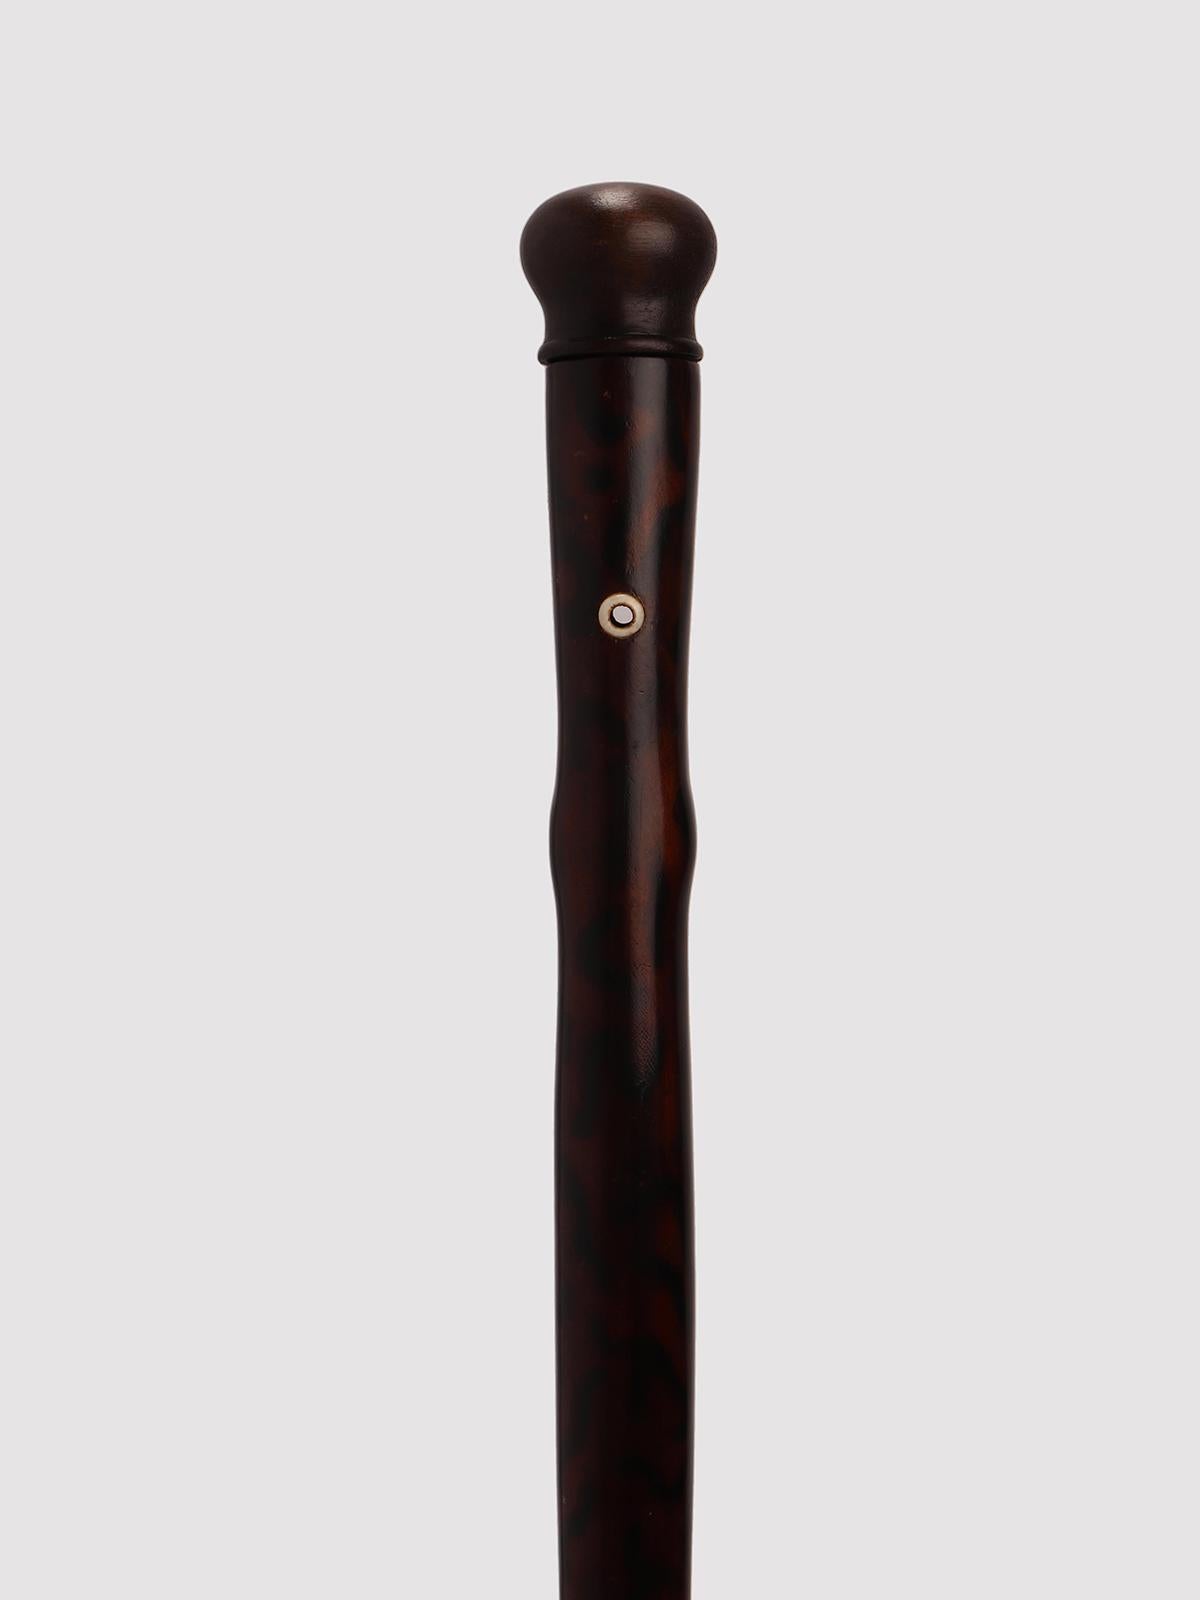 Sehr seltenes Gadget-System Spazierstock: Stock mit der Funktion eines Musikinstruments, einer Flöte. Stiel aus bemaltem Obstholz, Griff aus Holz. Das Innere des Schafts ist hohl, und Löcher und Tasten ermöglichen das Abspielen von Musik, sobald der